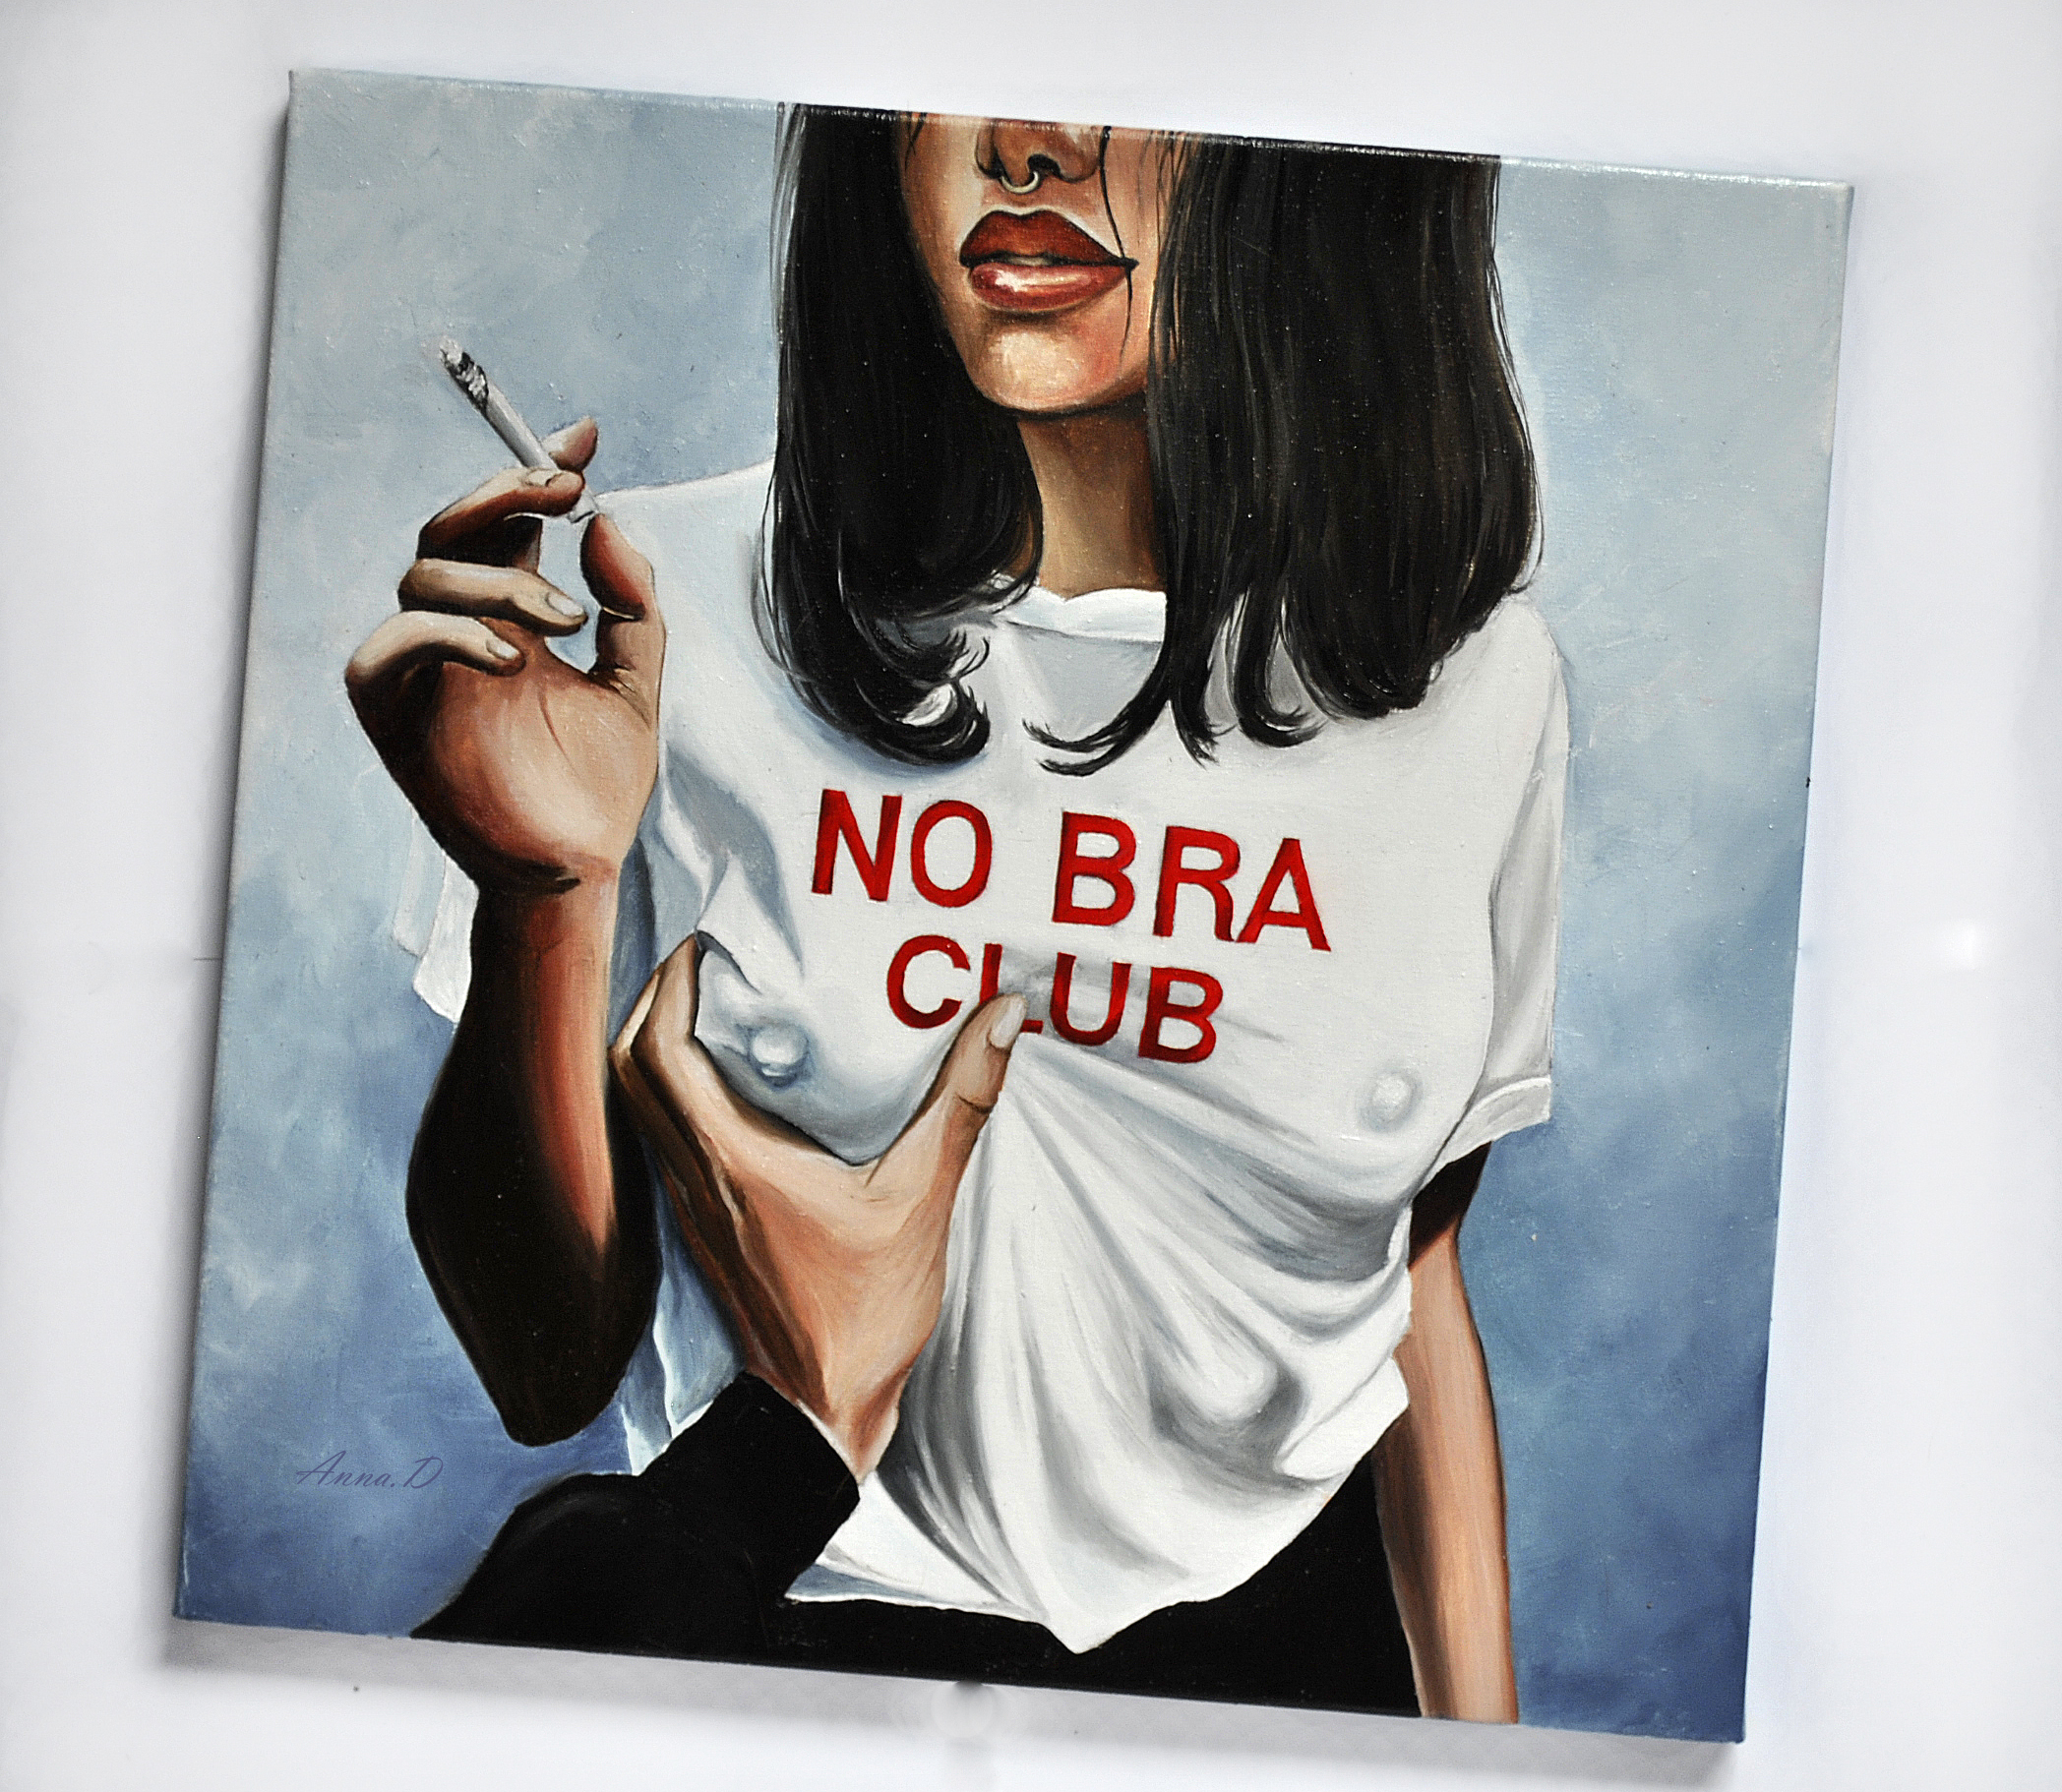 Иллюстрация No bra club в стиле портрет